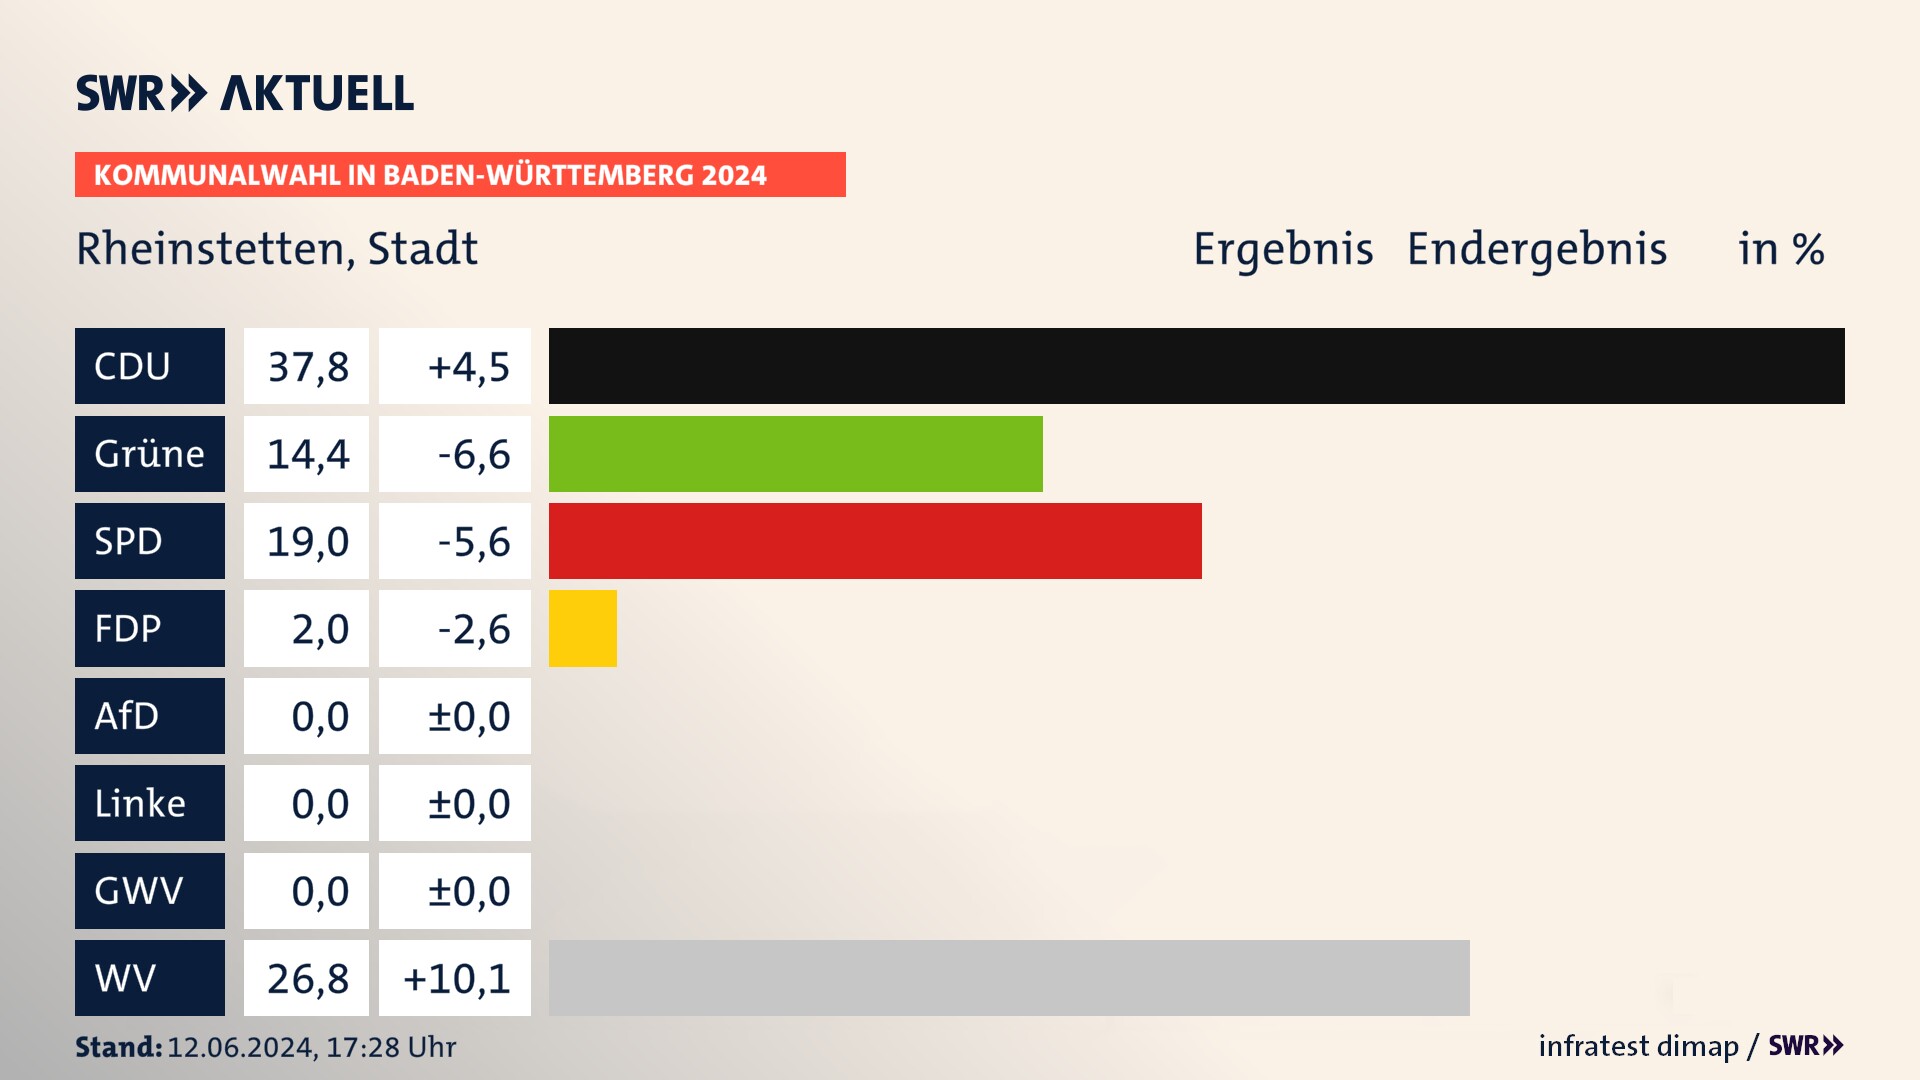 Kommunalwahl 2024 Endergebnis Zweitstimme für Rheinstetten. In Rheinstetten, Stadt erzielt die CDU 37,8 Prozent der gültigen  Stimmen. Die Grünen landen bei 14,4 Prozent. Die SPD erreicht 19,0 Prozent. Die FDP kommt auf 2,0 Prozent. Die Wählervereinigungen landen bei 26,8 Prozent.